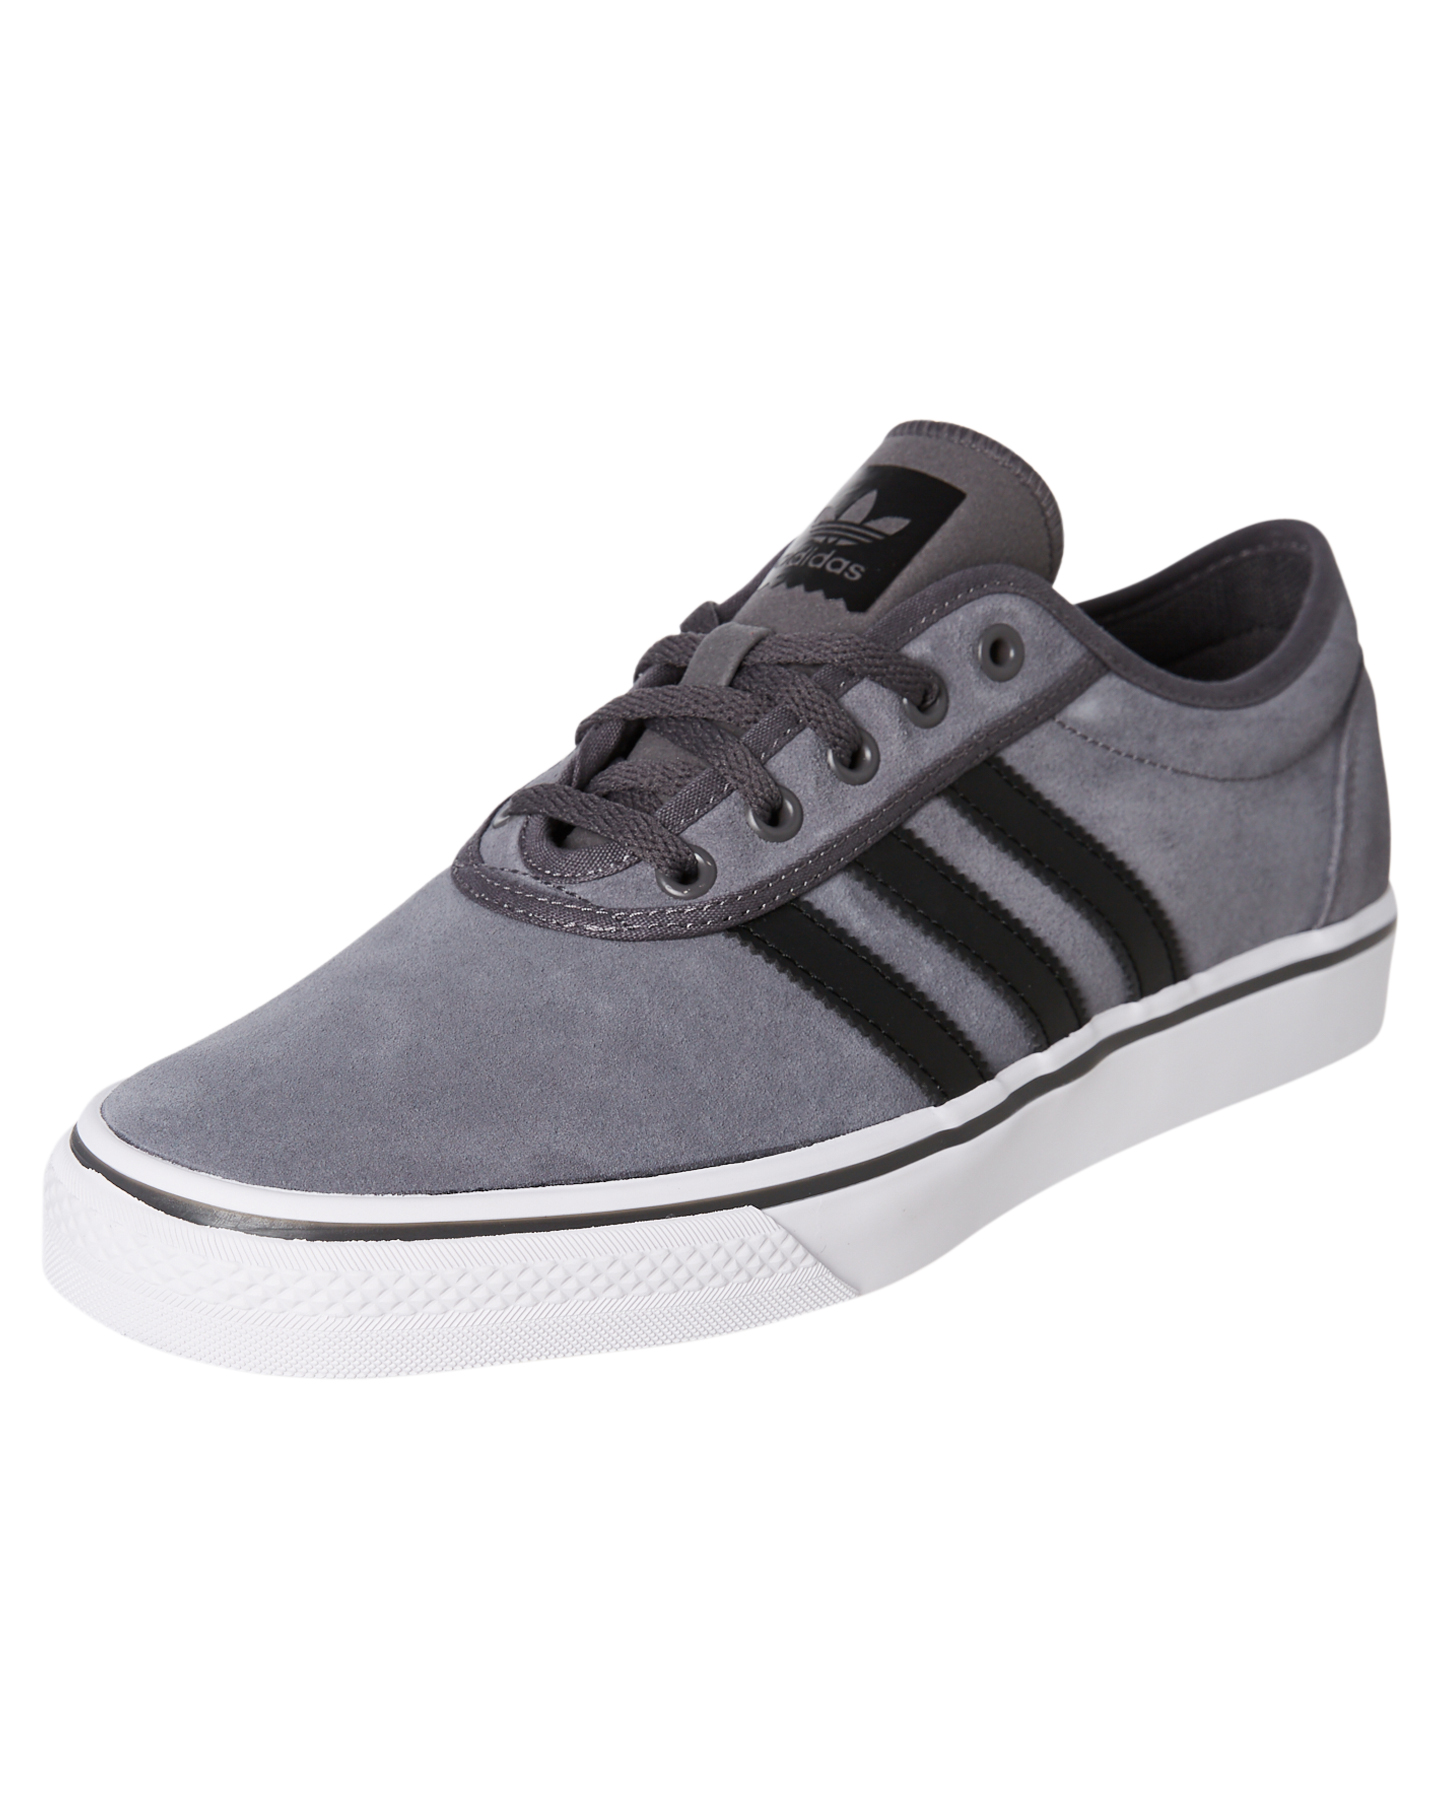 Adidas Adi Ease Shoe - Grey | SurfStitch